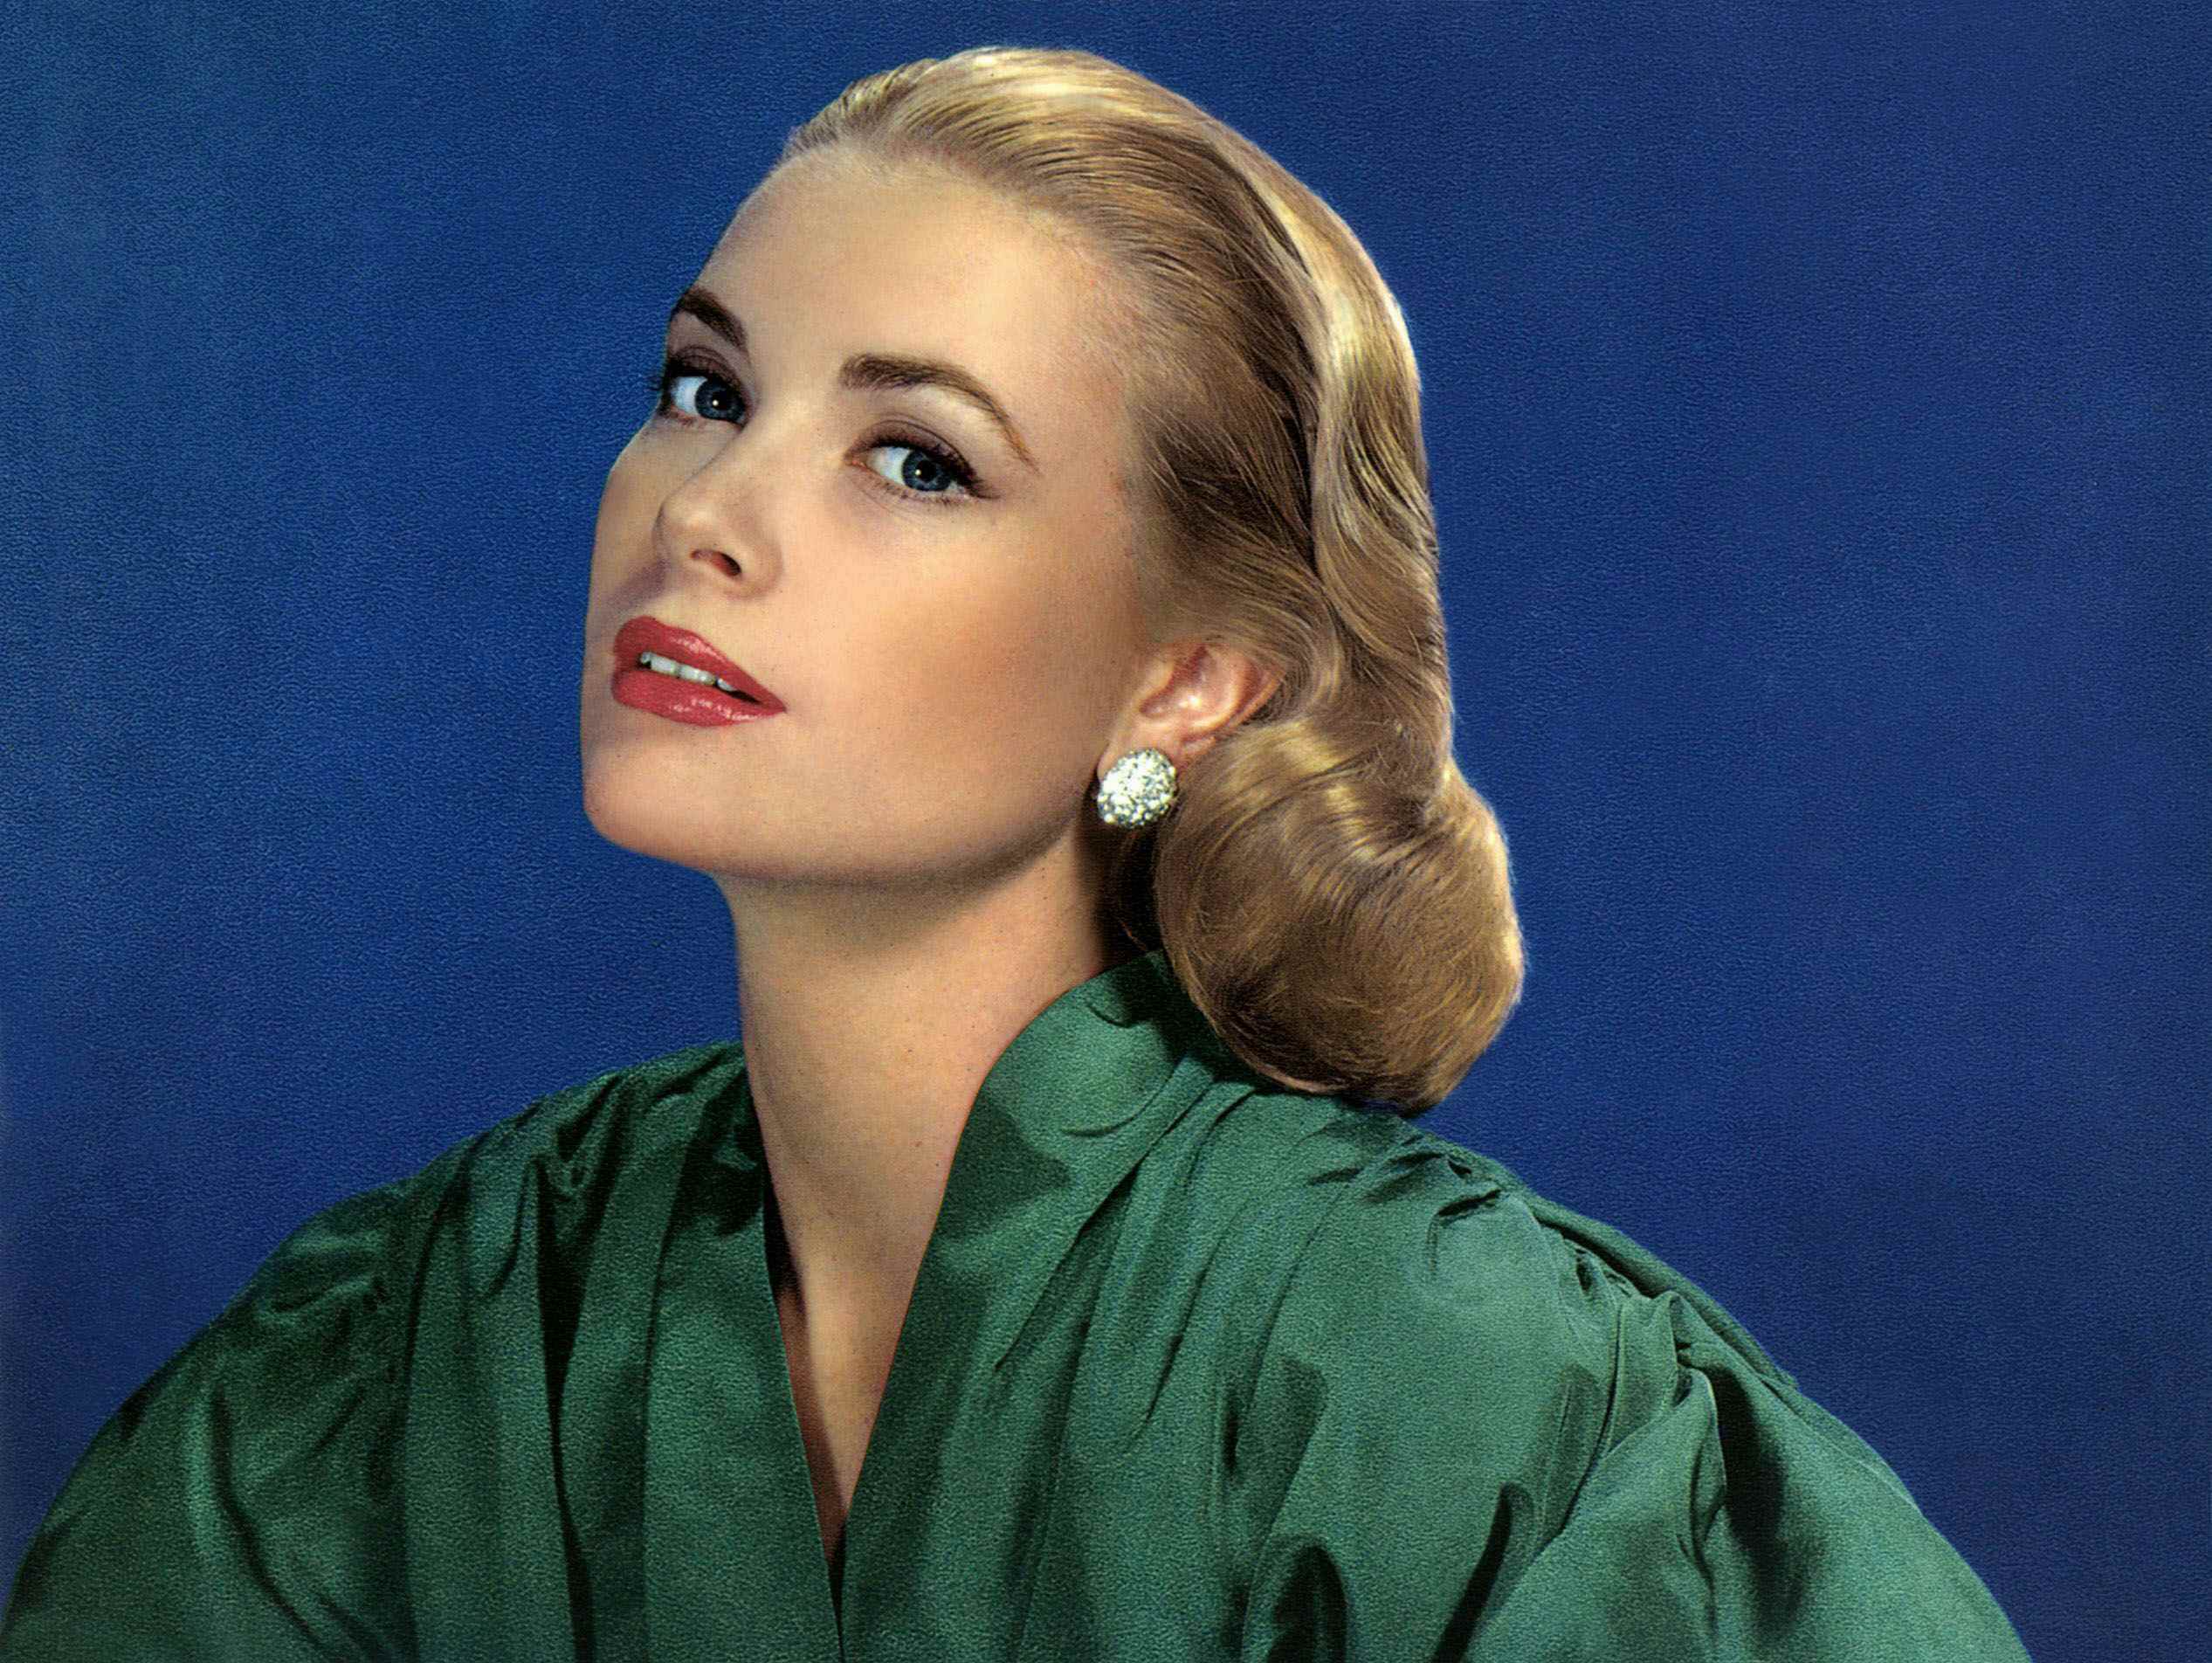 Grace Kelly als Hollywood-Ikone in den 1950er Jahren